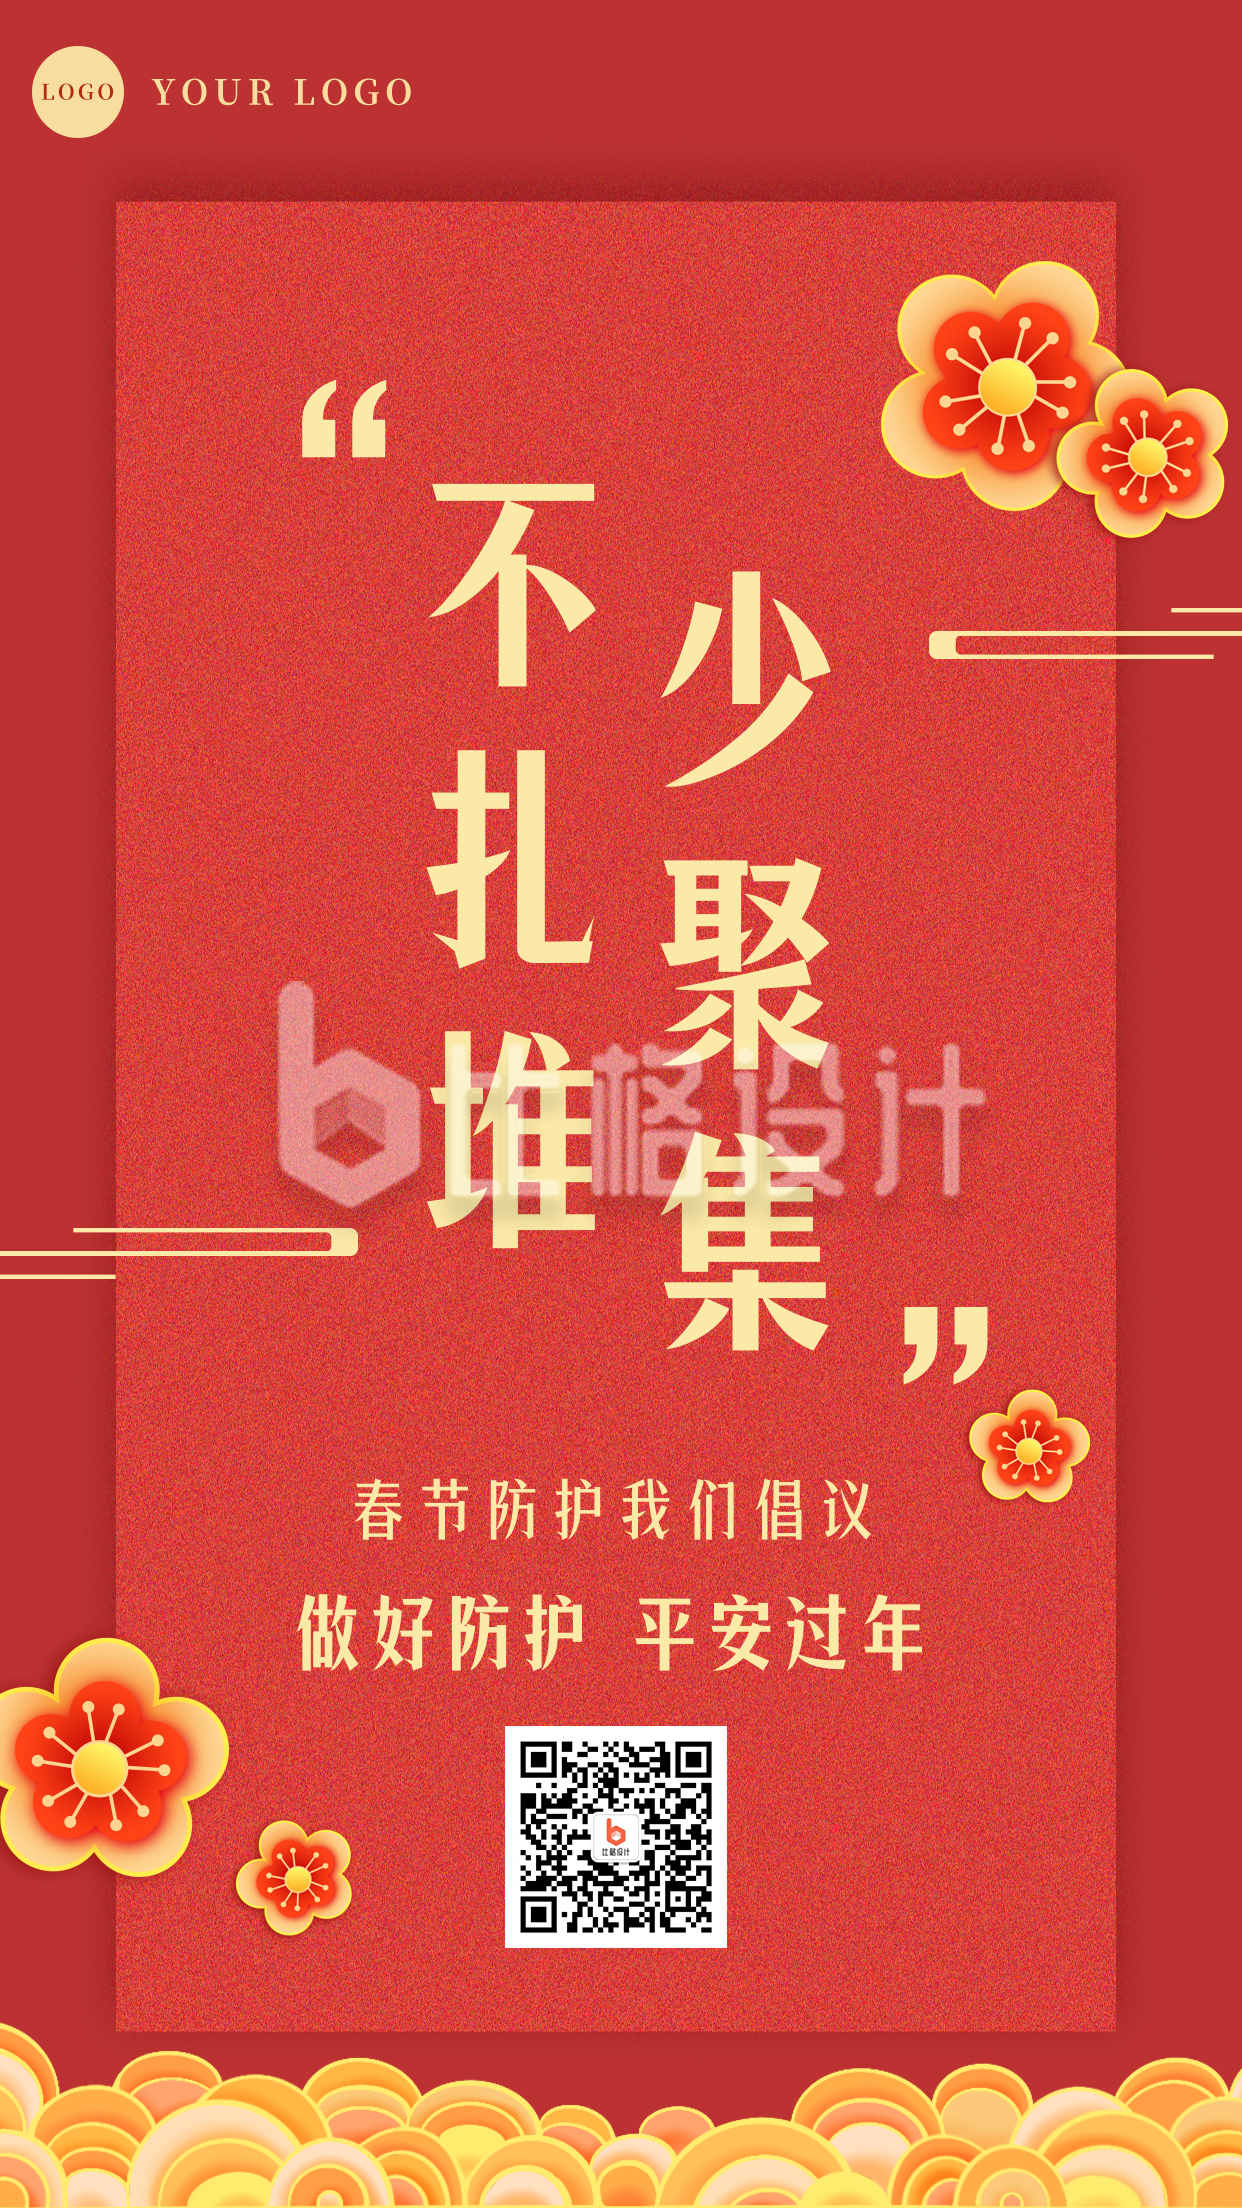 春节疫情防控宣传倡导倡议融媒体手机海报